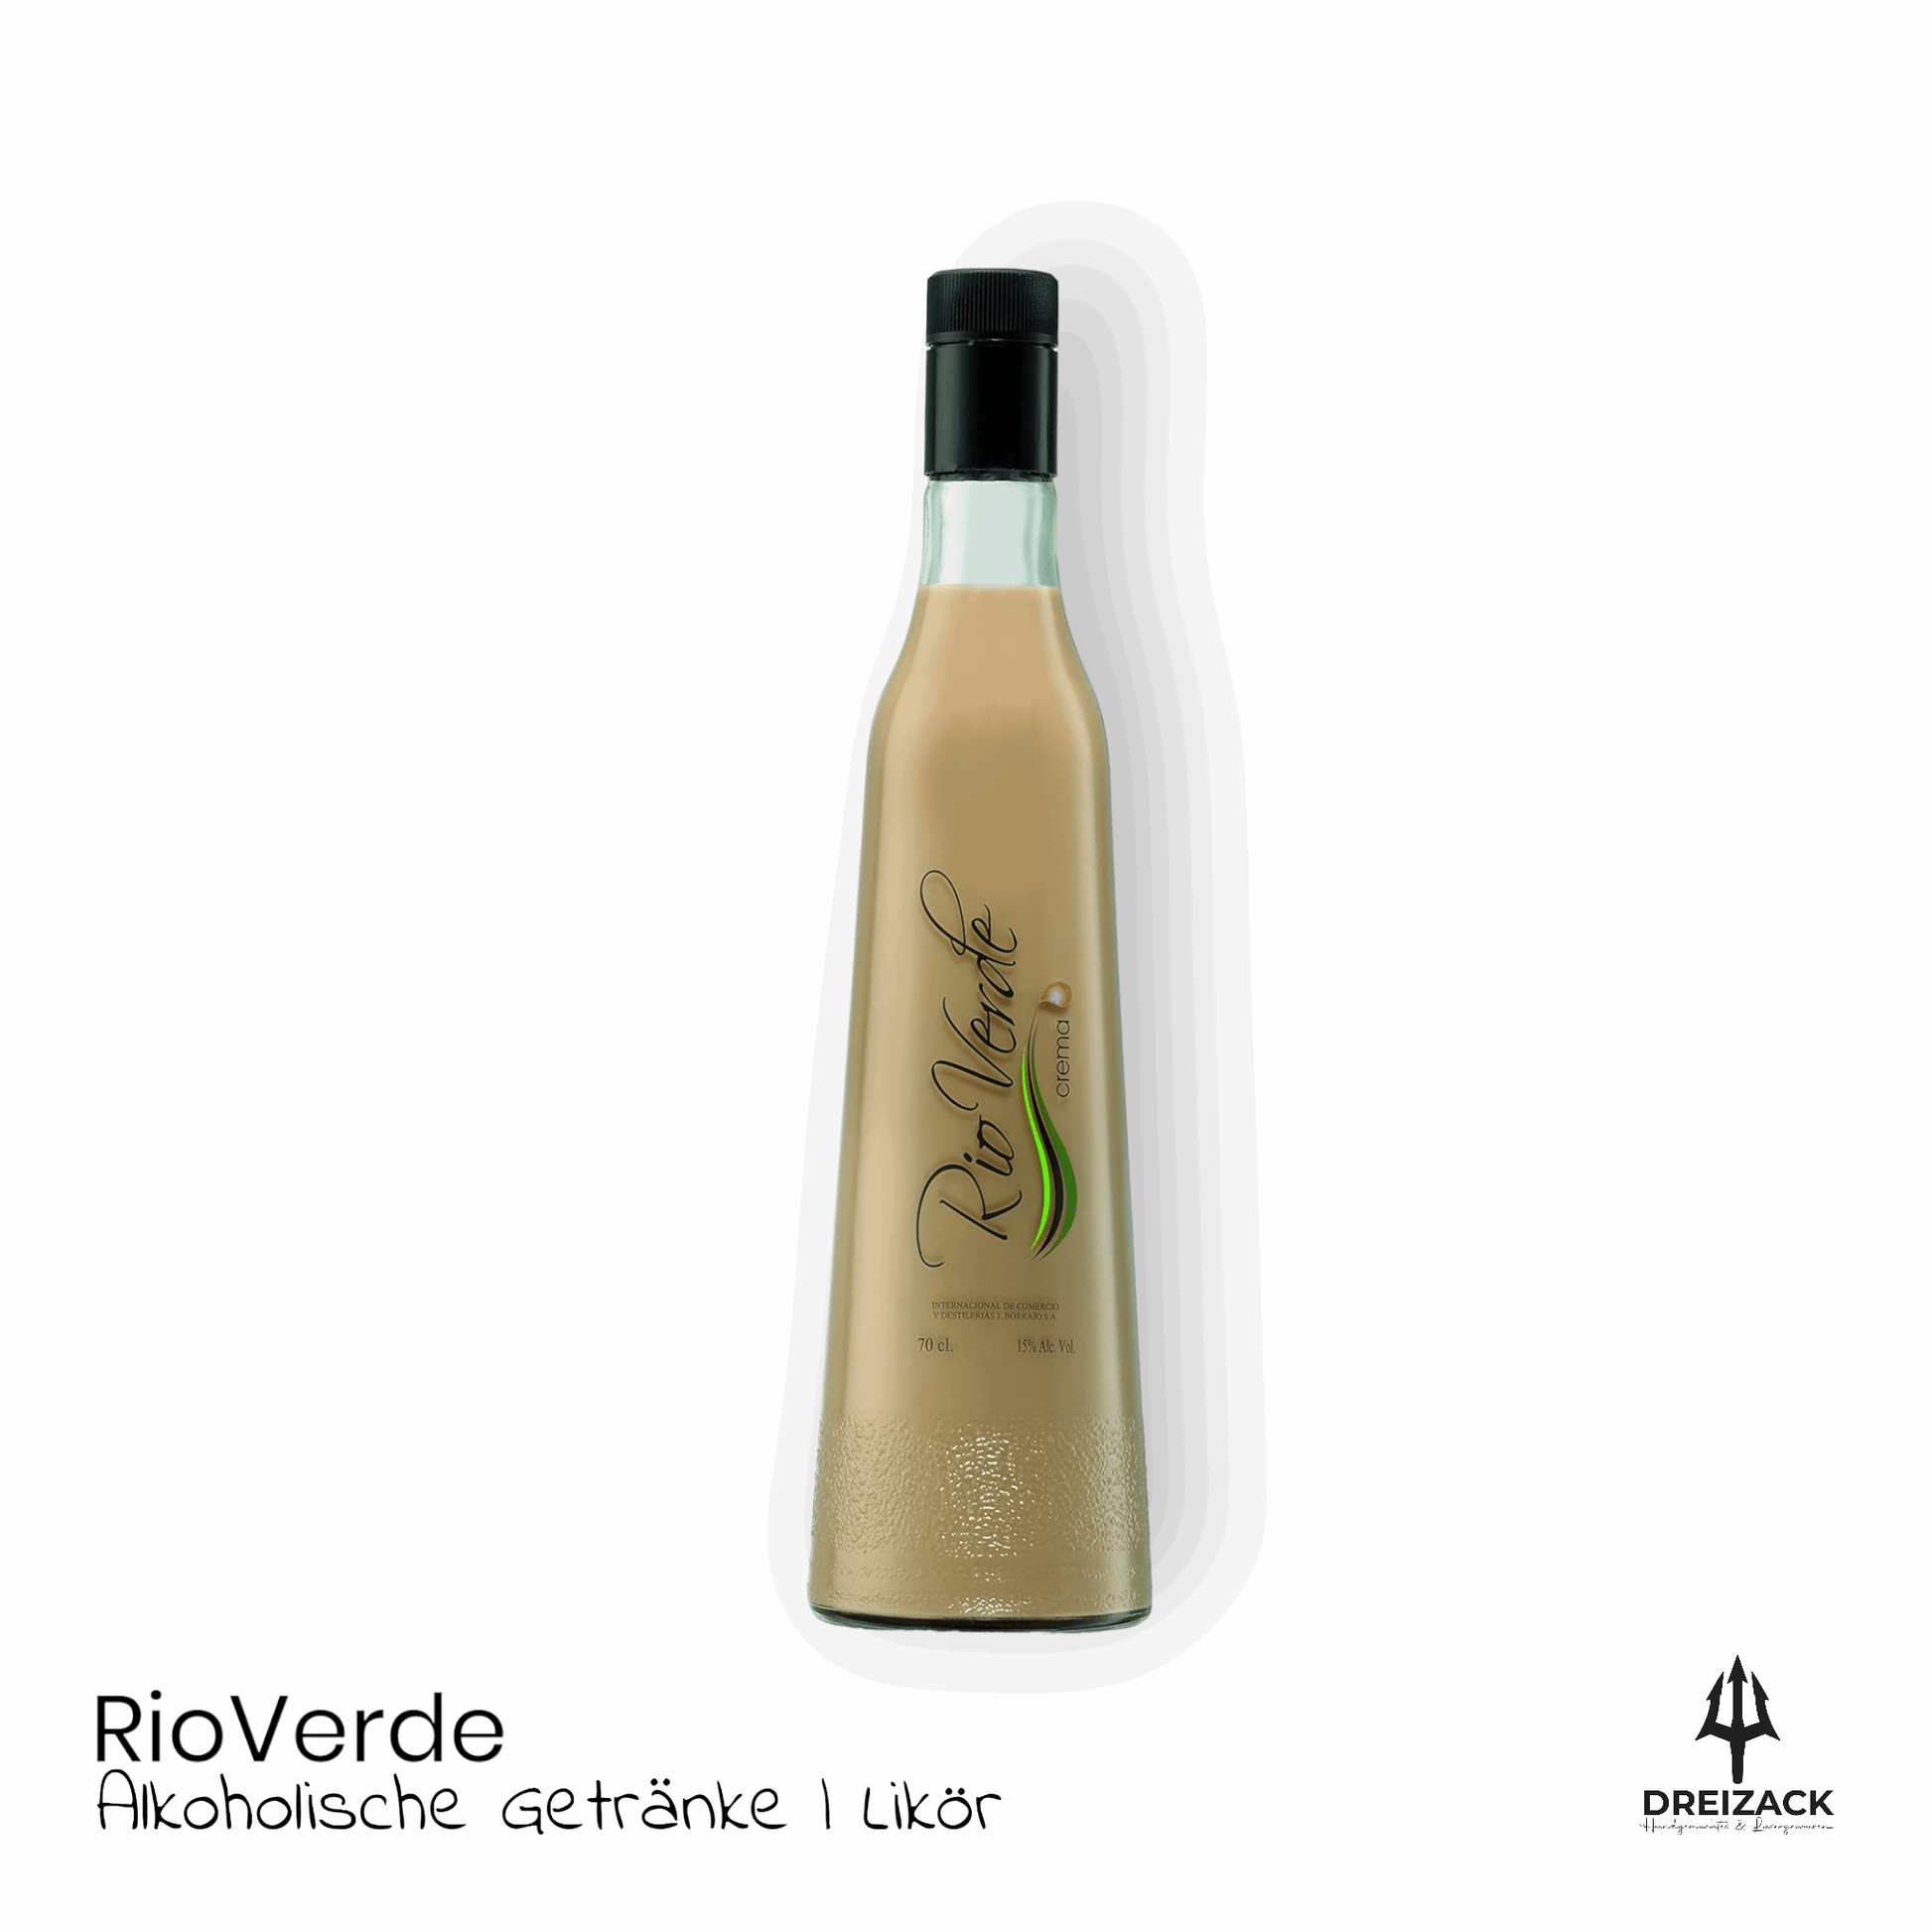 Rio Verde | Arroz con Leche & Crema - Milchreis Likör für heimelige Momente Crema Alkoholische Getränke Dreizack oesterreich handgemachte geschenke in wien